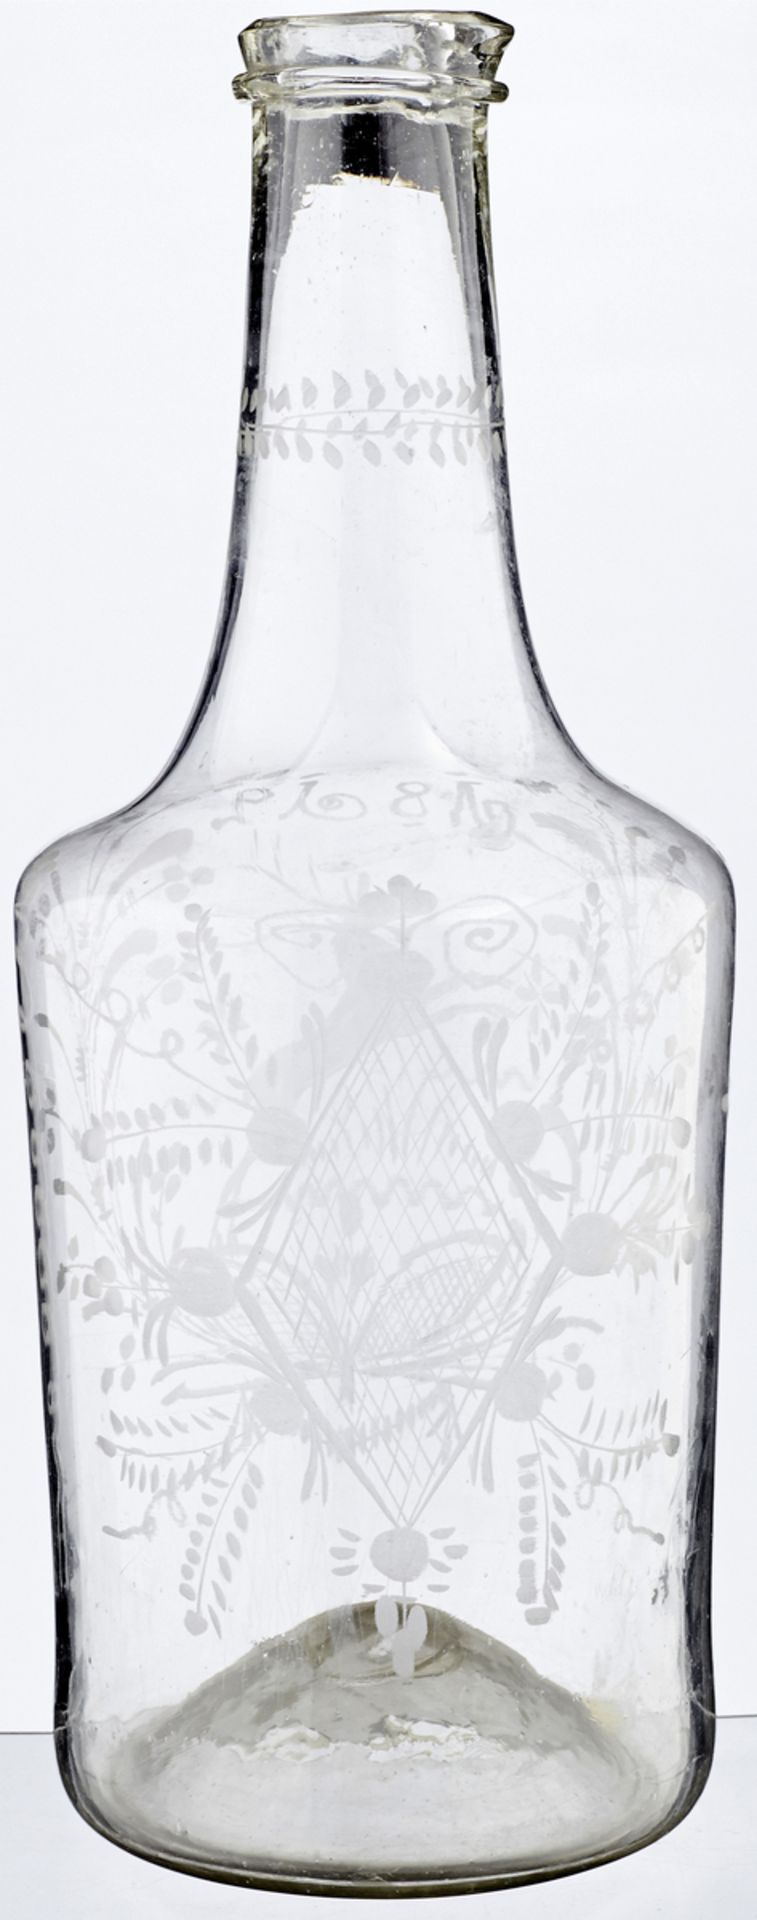 MassflascheWohl Flühli, datiert 1812. Farbloses, dünnwandig geblasenes Glas mit eingestochenem - Bild 2 aus 2